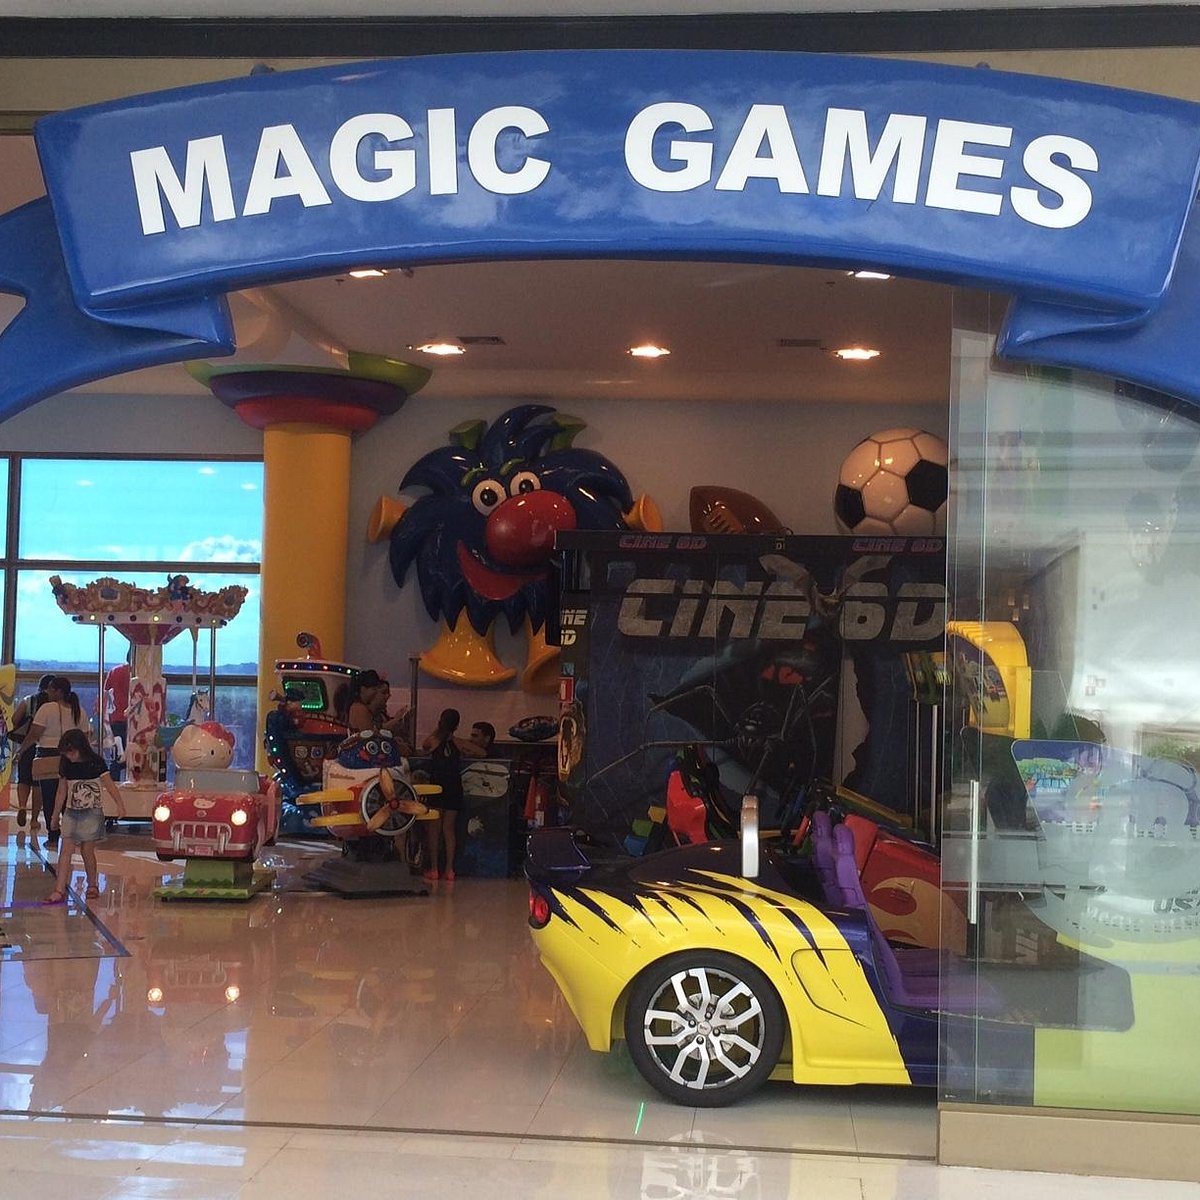 Magic Games - A diversão na Magic Games do Shopping Cidade Norte é  garantida! E o salão da Magic Games Festa é lindo! Não deixe de conferir!  😍🎊🎠 #magicgamesparks #papaiemamae #família #magicgamesparks #